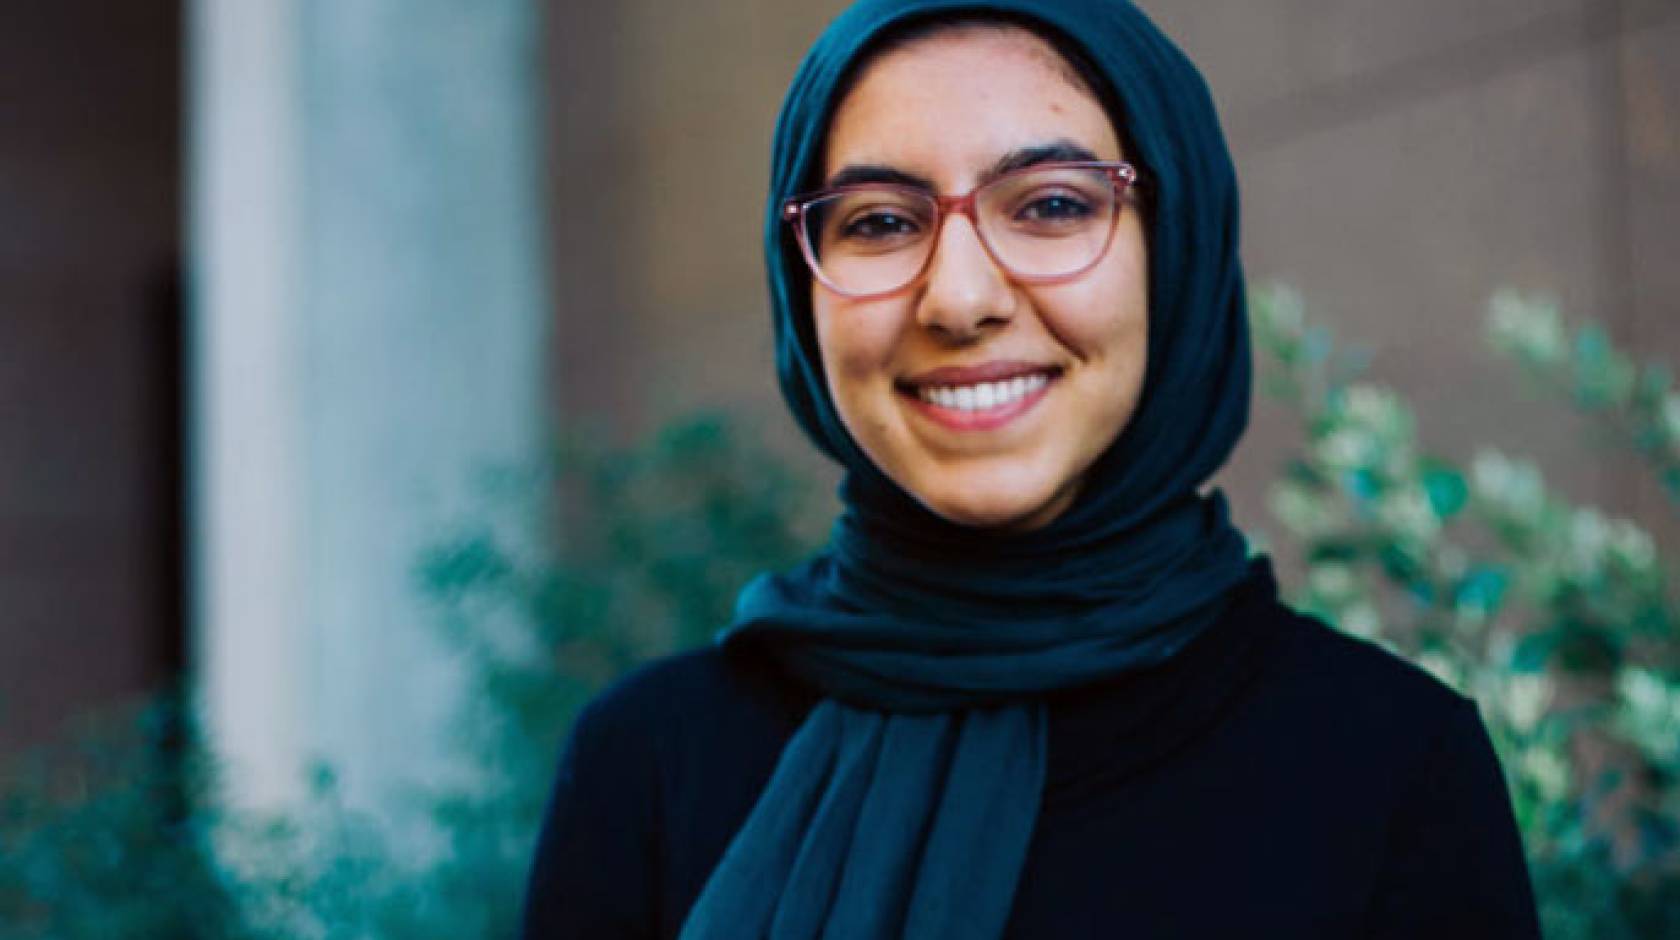 UC Irvine junior Neda Ibrahim